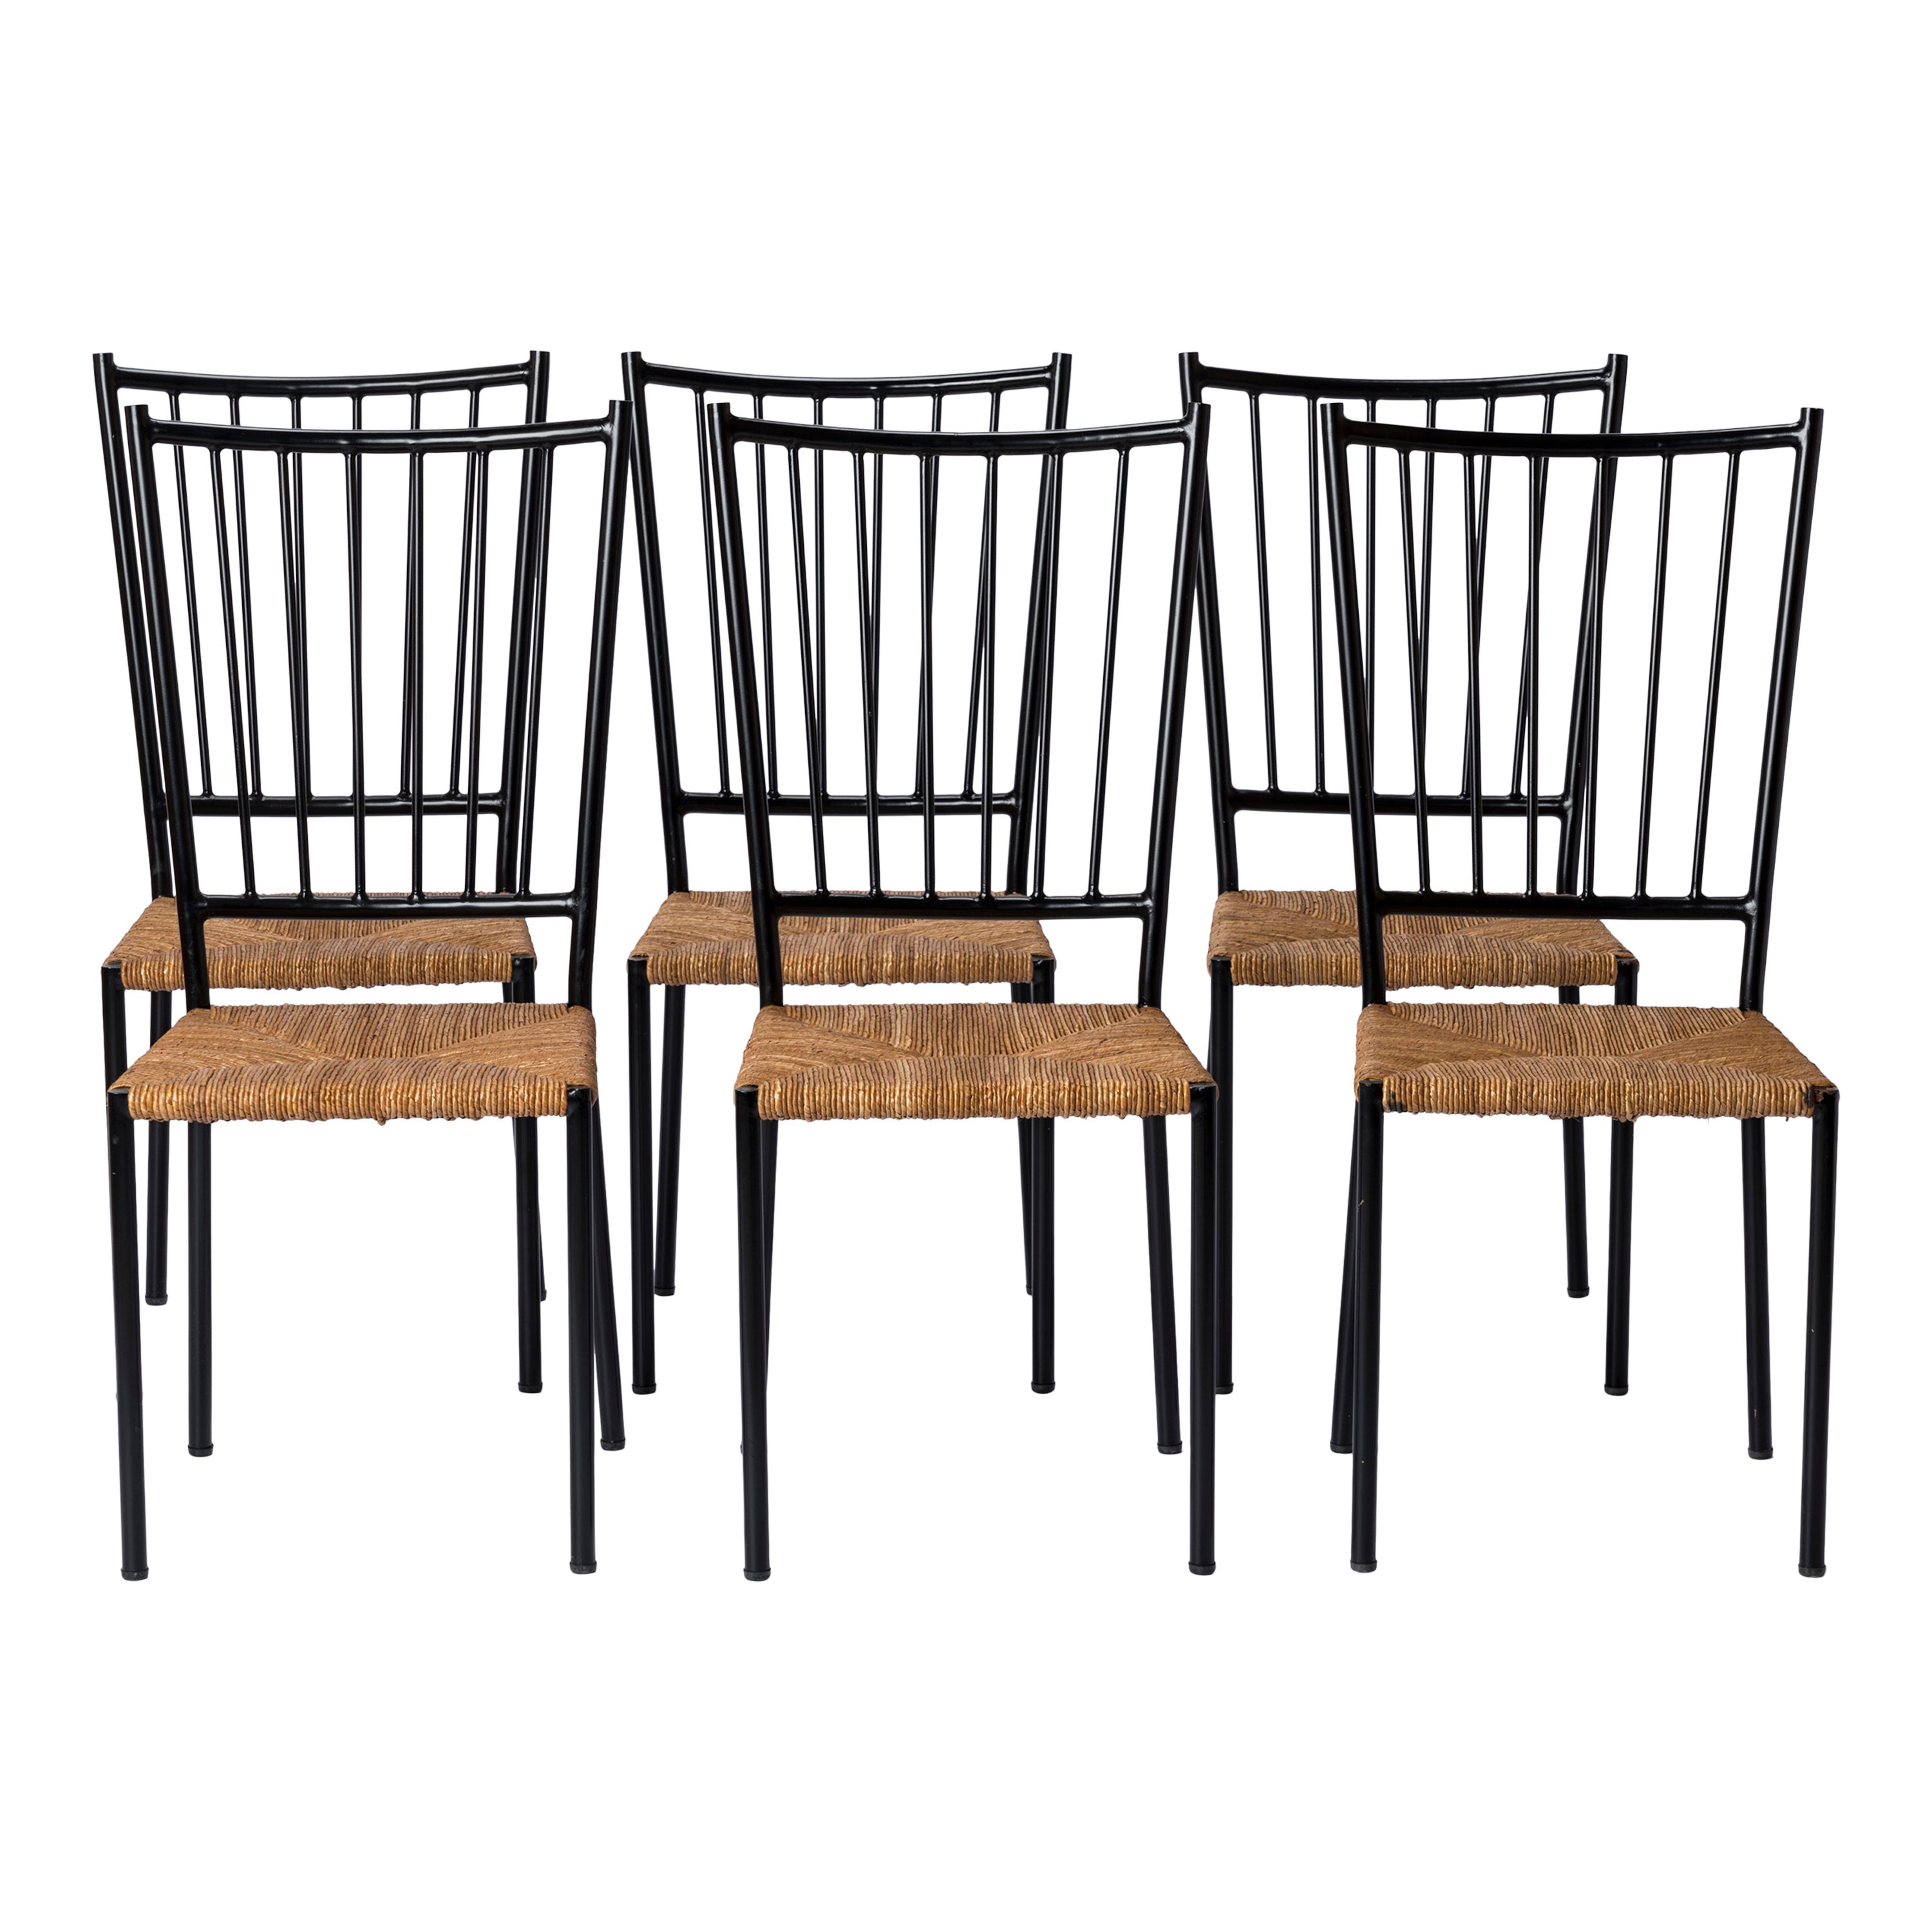 Sechs Stühle aus Binsen und lackiertem Stahl von Colette Gueden - Frankreich 1950er Jahre